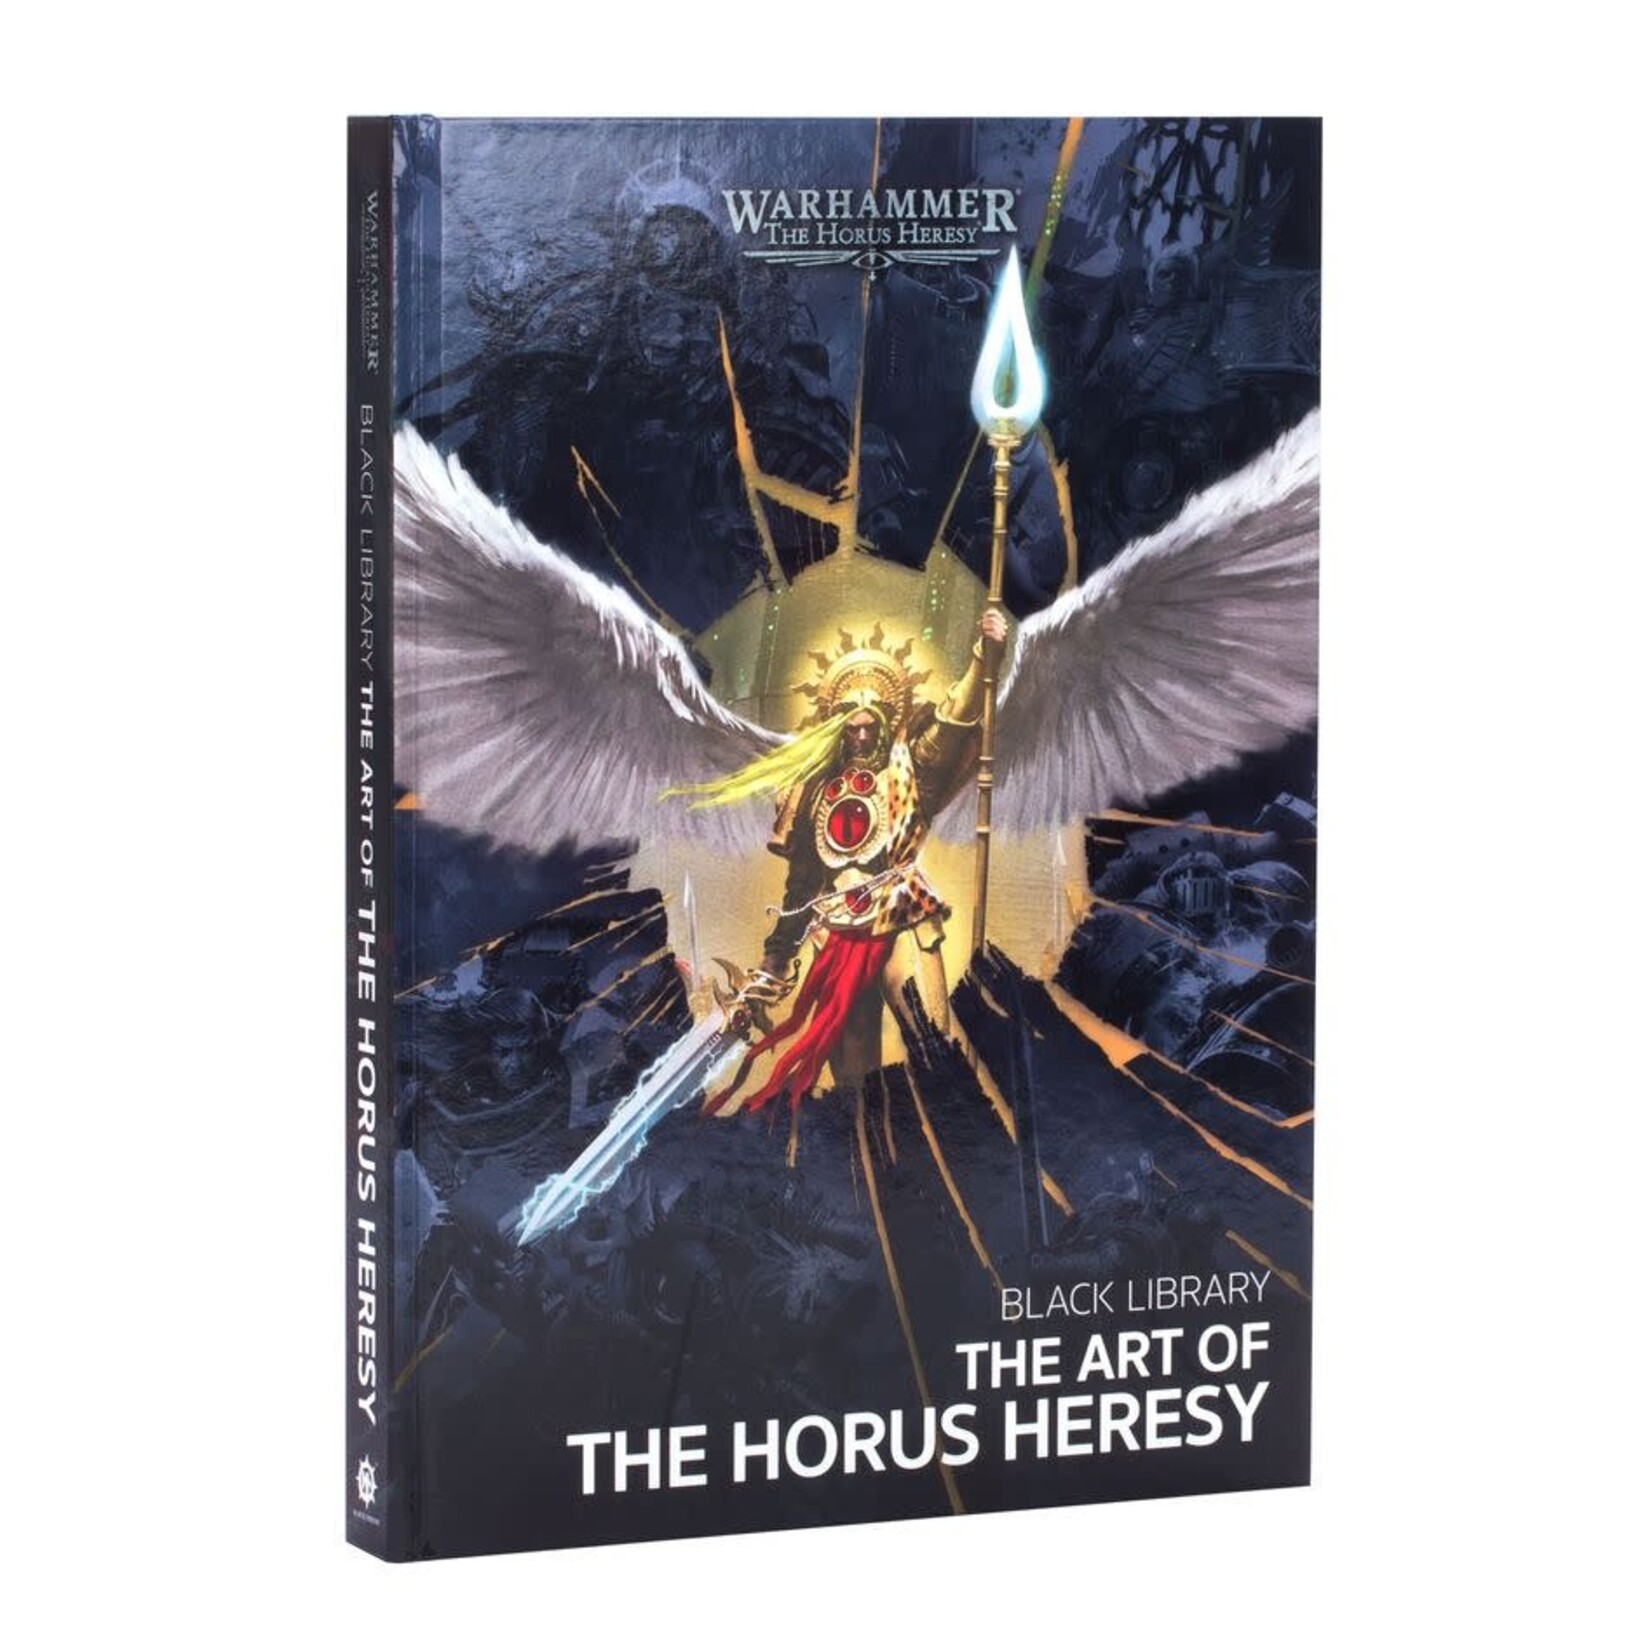 The Art of the Horus Heresy HardBack